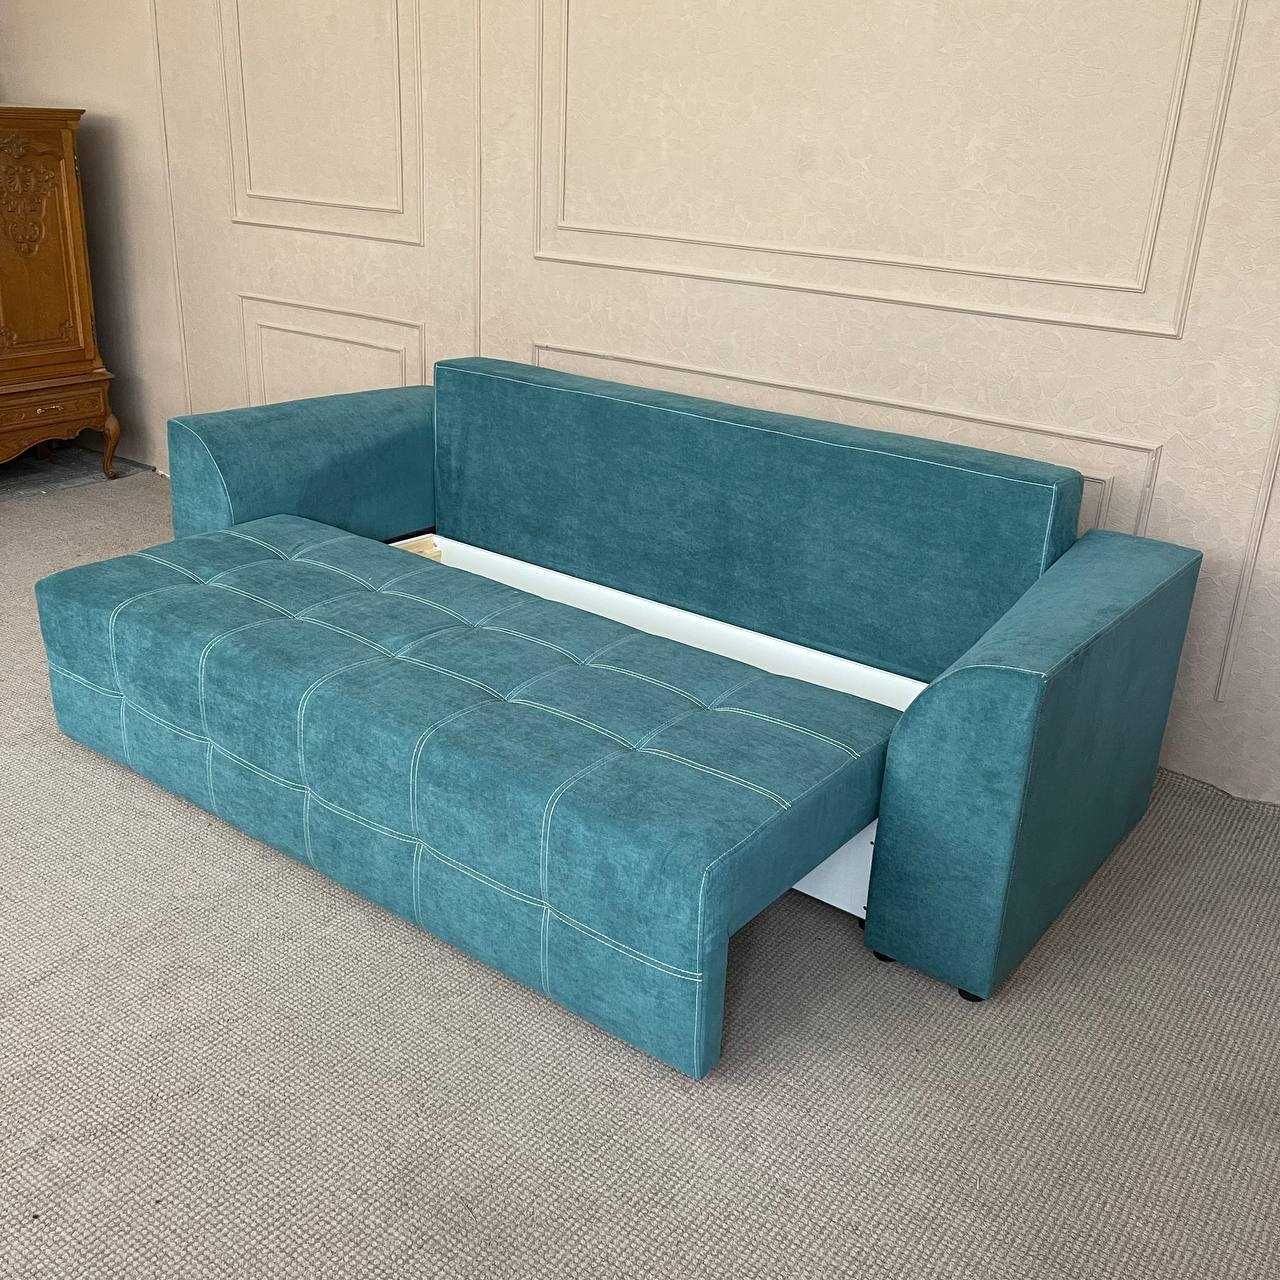 Розкладний новий диван в тканині купити